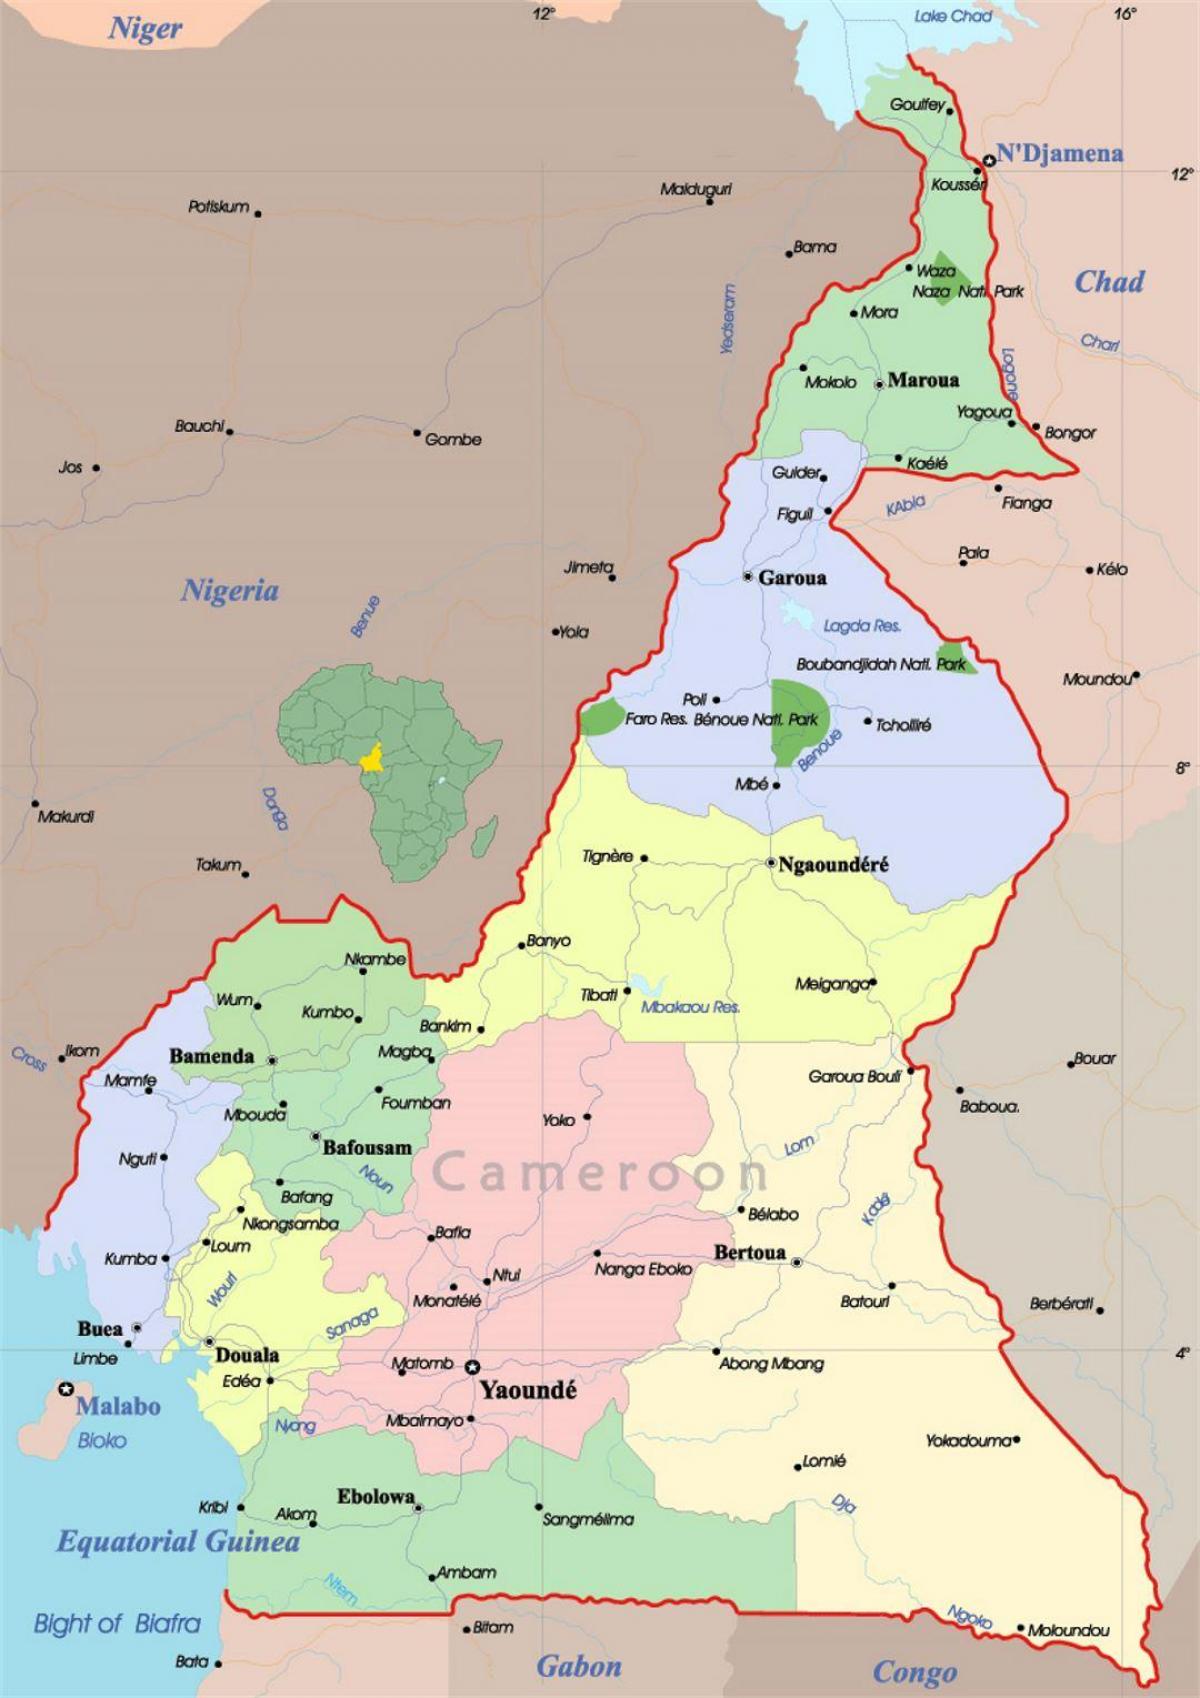 Աֆրիկա Կամերուն քարտեզի վրա